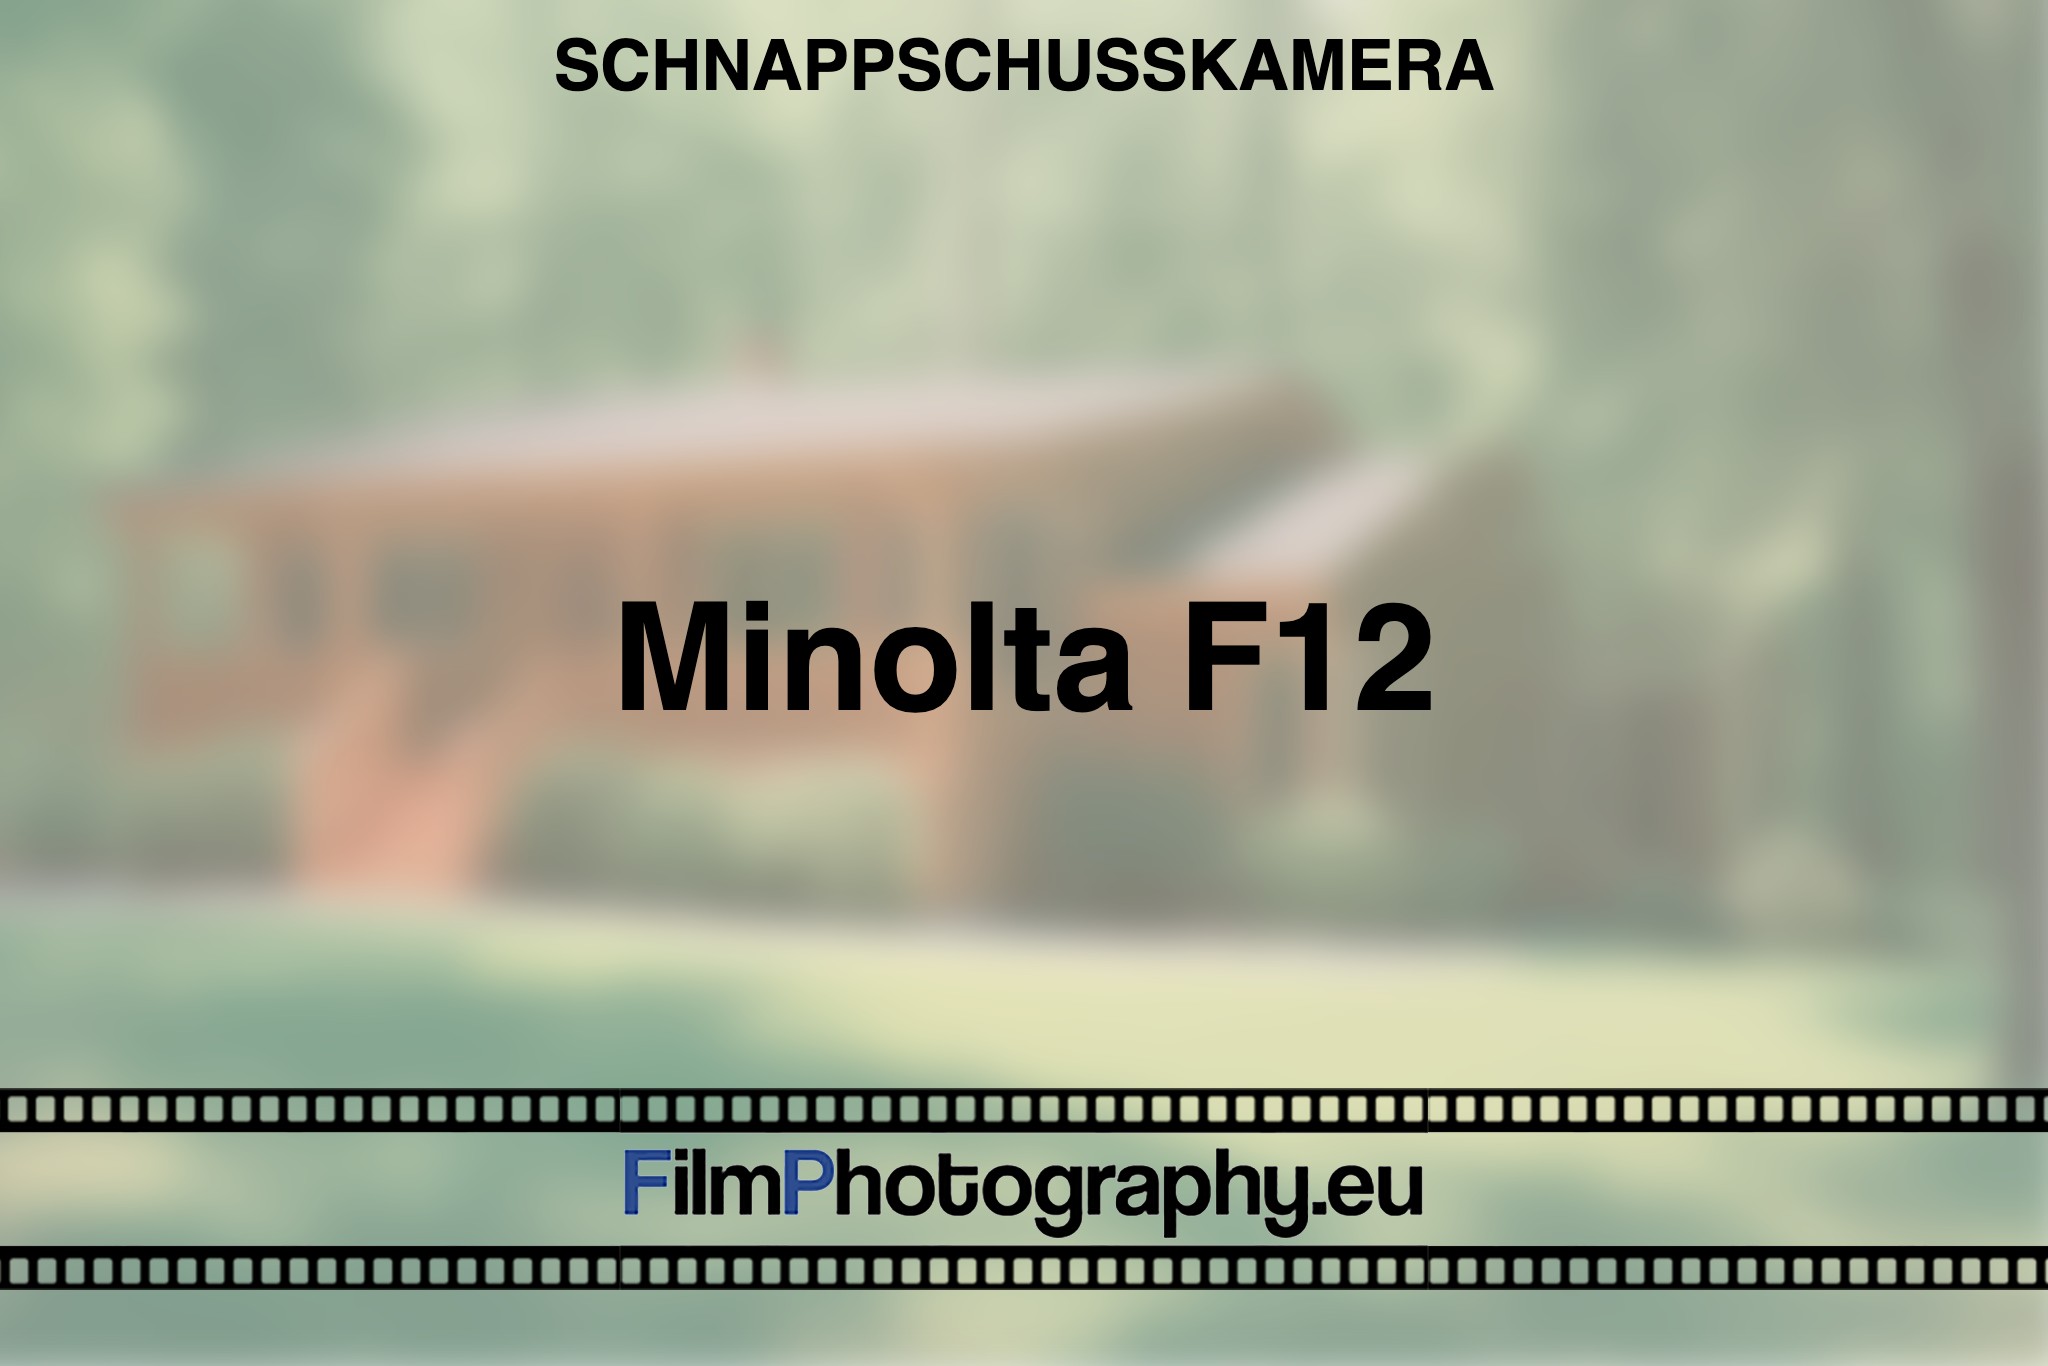 minolta-f12-schnappschusskamera-bnv